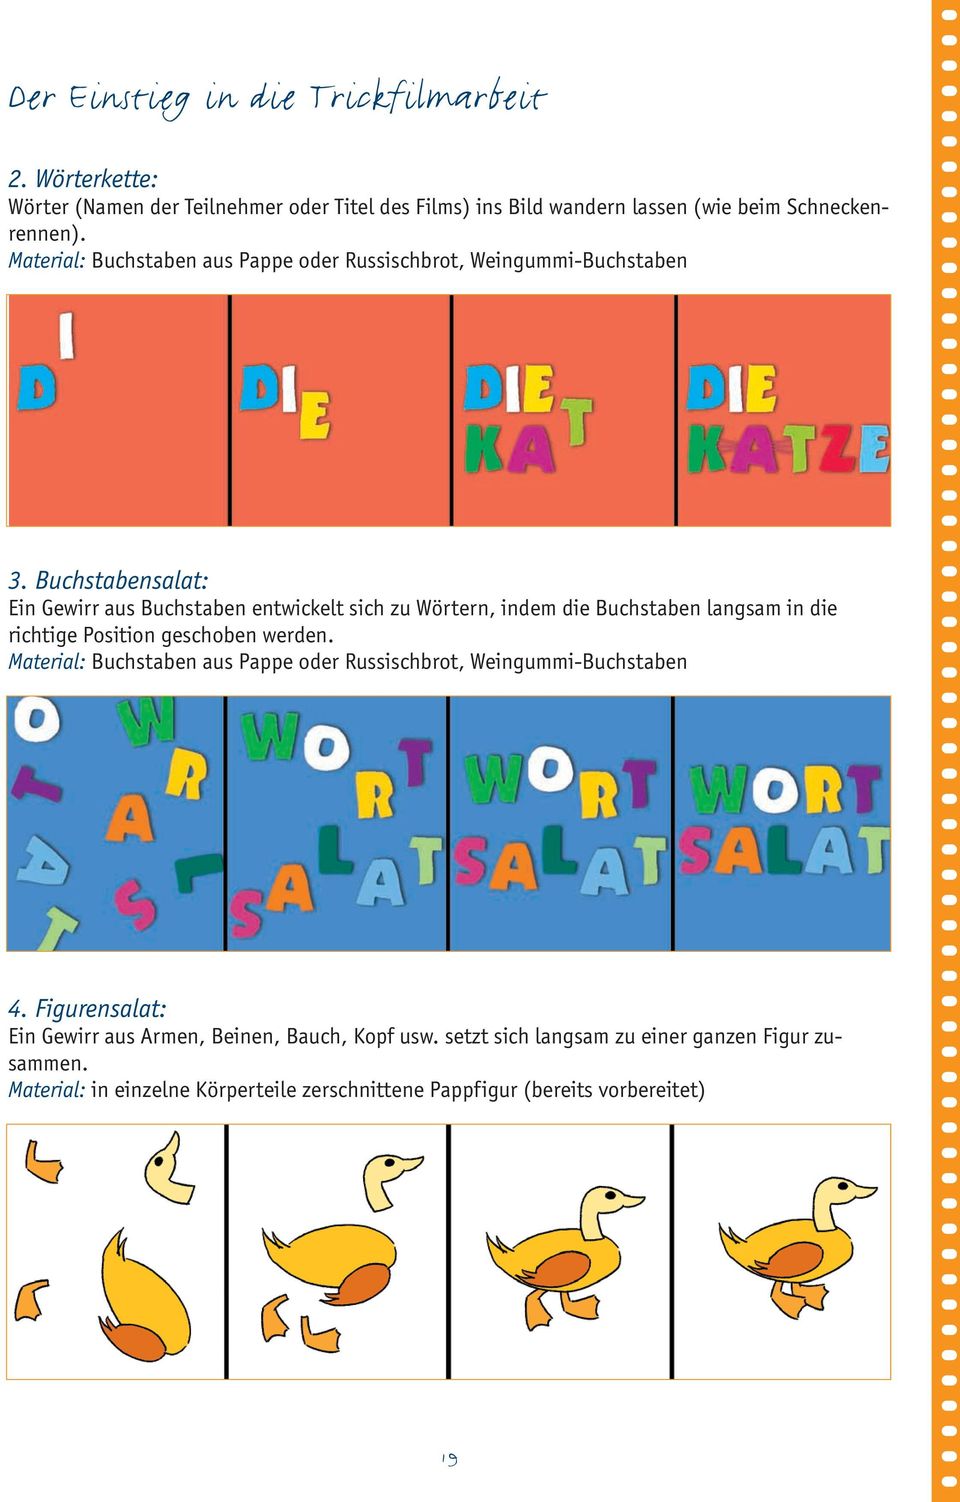 Buchstabensalat: Ein Gewirr aus Buchstaben entwickelt sich zu Wörtern, indem die Buchstaben langsam in die richtige Position geschoben werden.